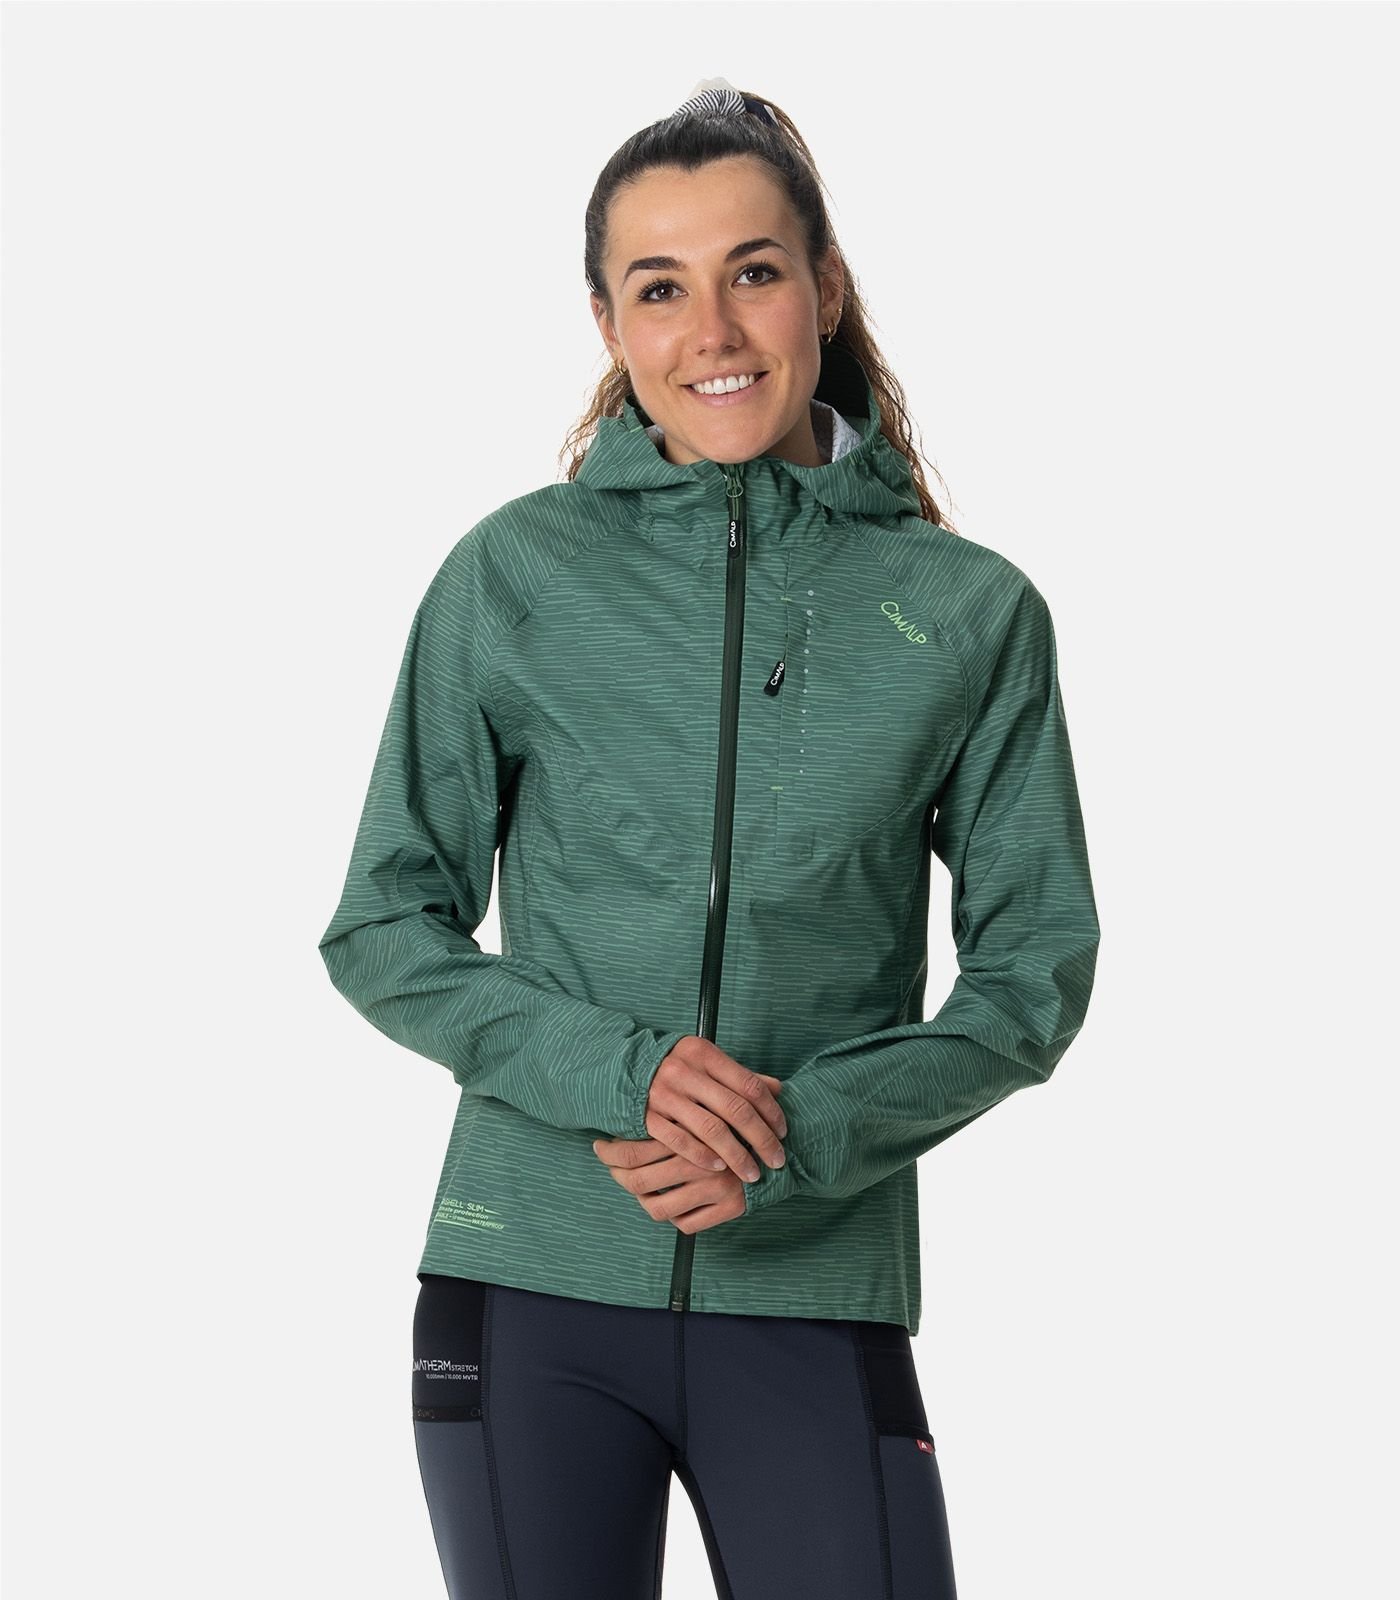 Waterproof Trail Running jacket